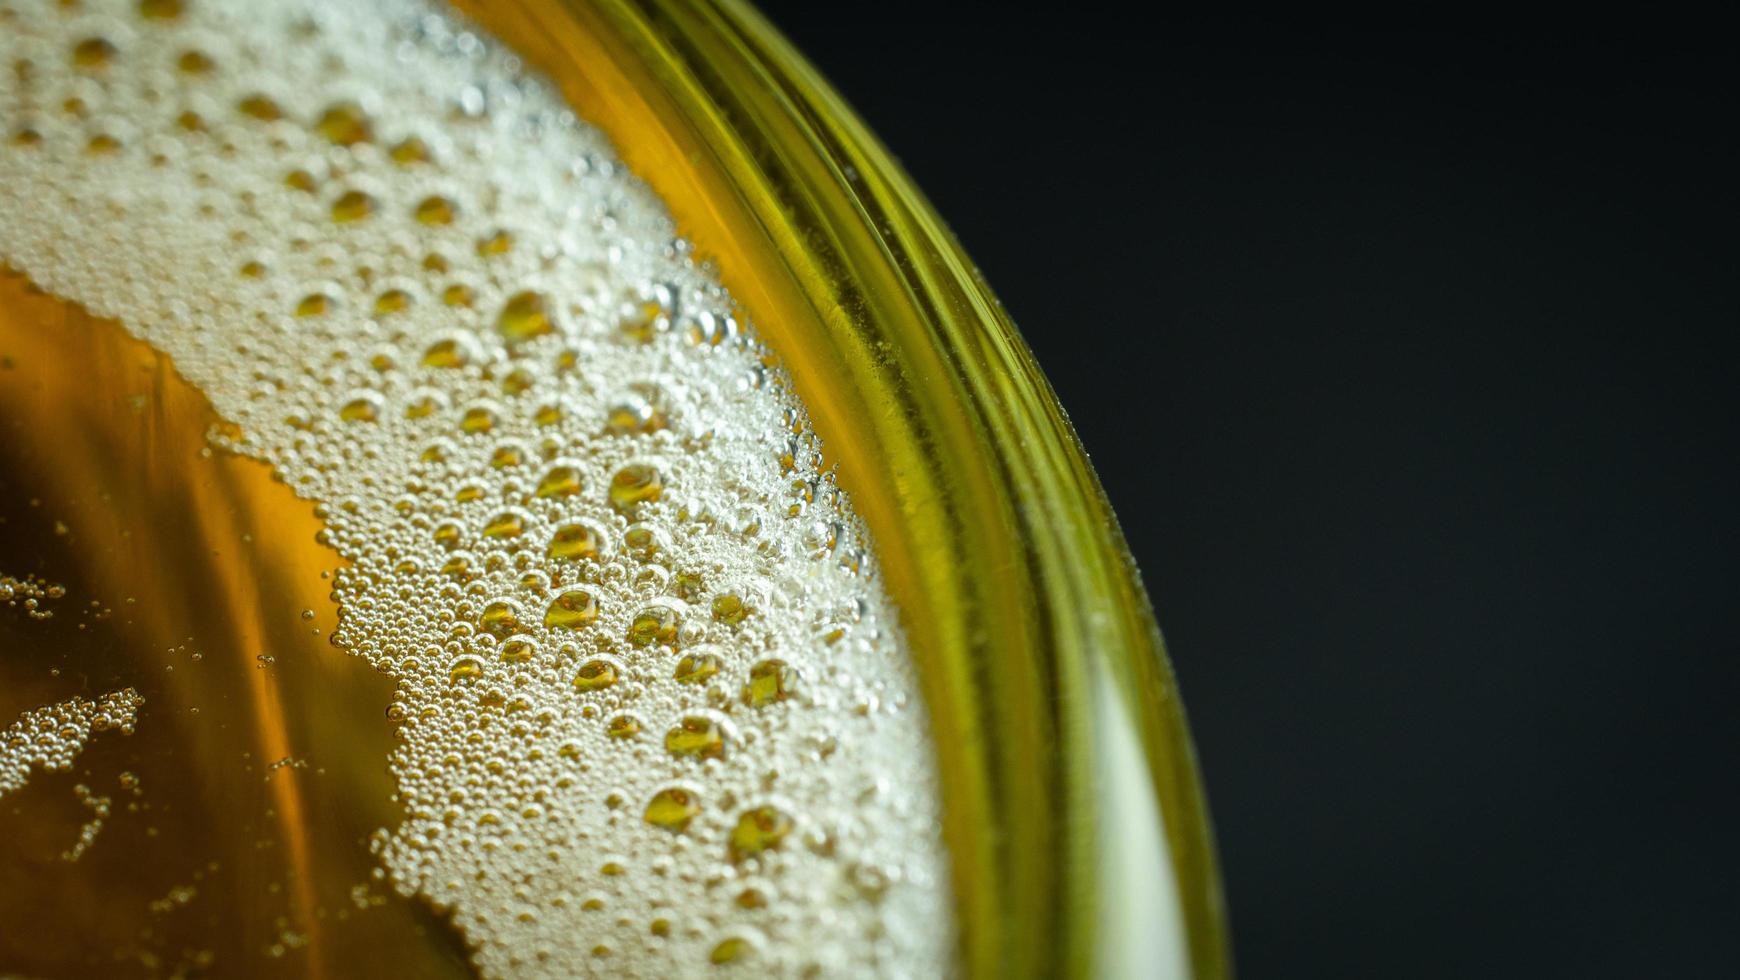 luchtbellen of schuim op de voorkant van het bier in het glas. het bierglas heeft water en belletjes aan de rand van het glas. foto